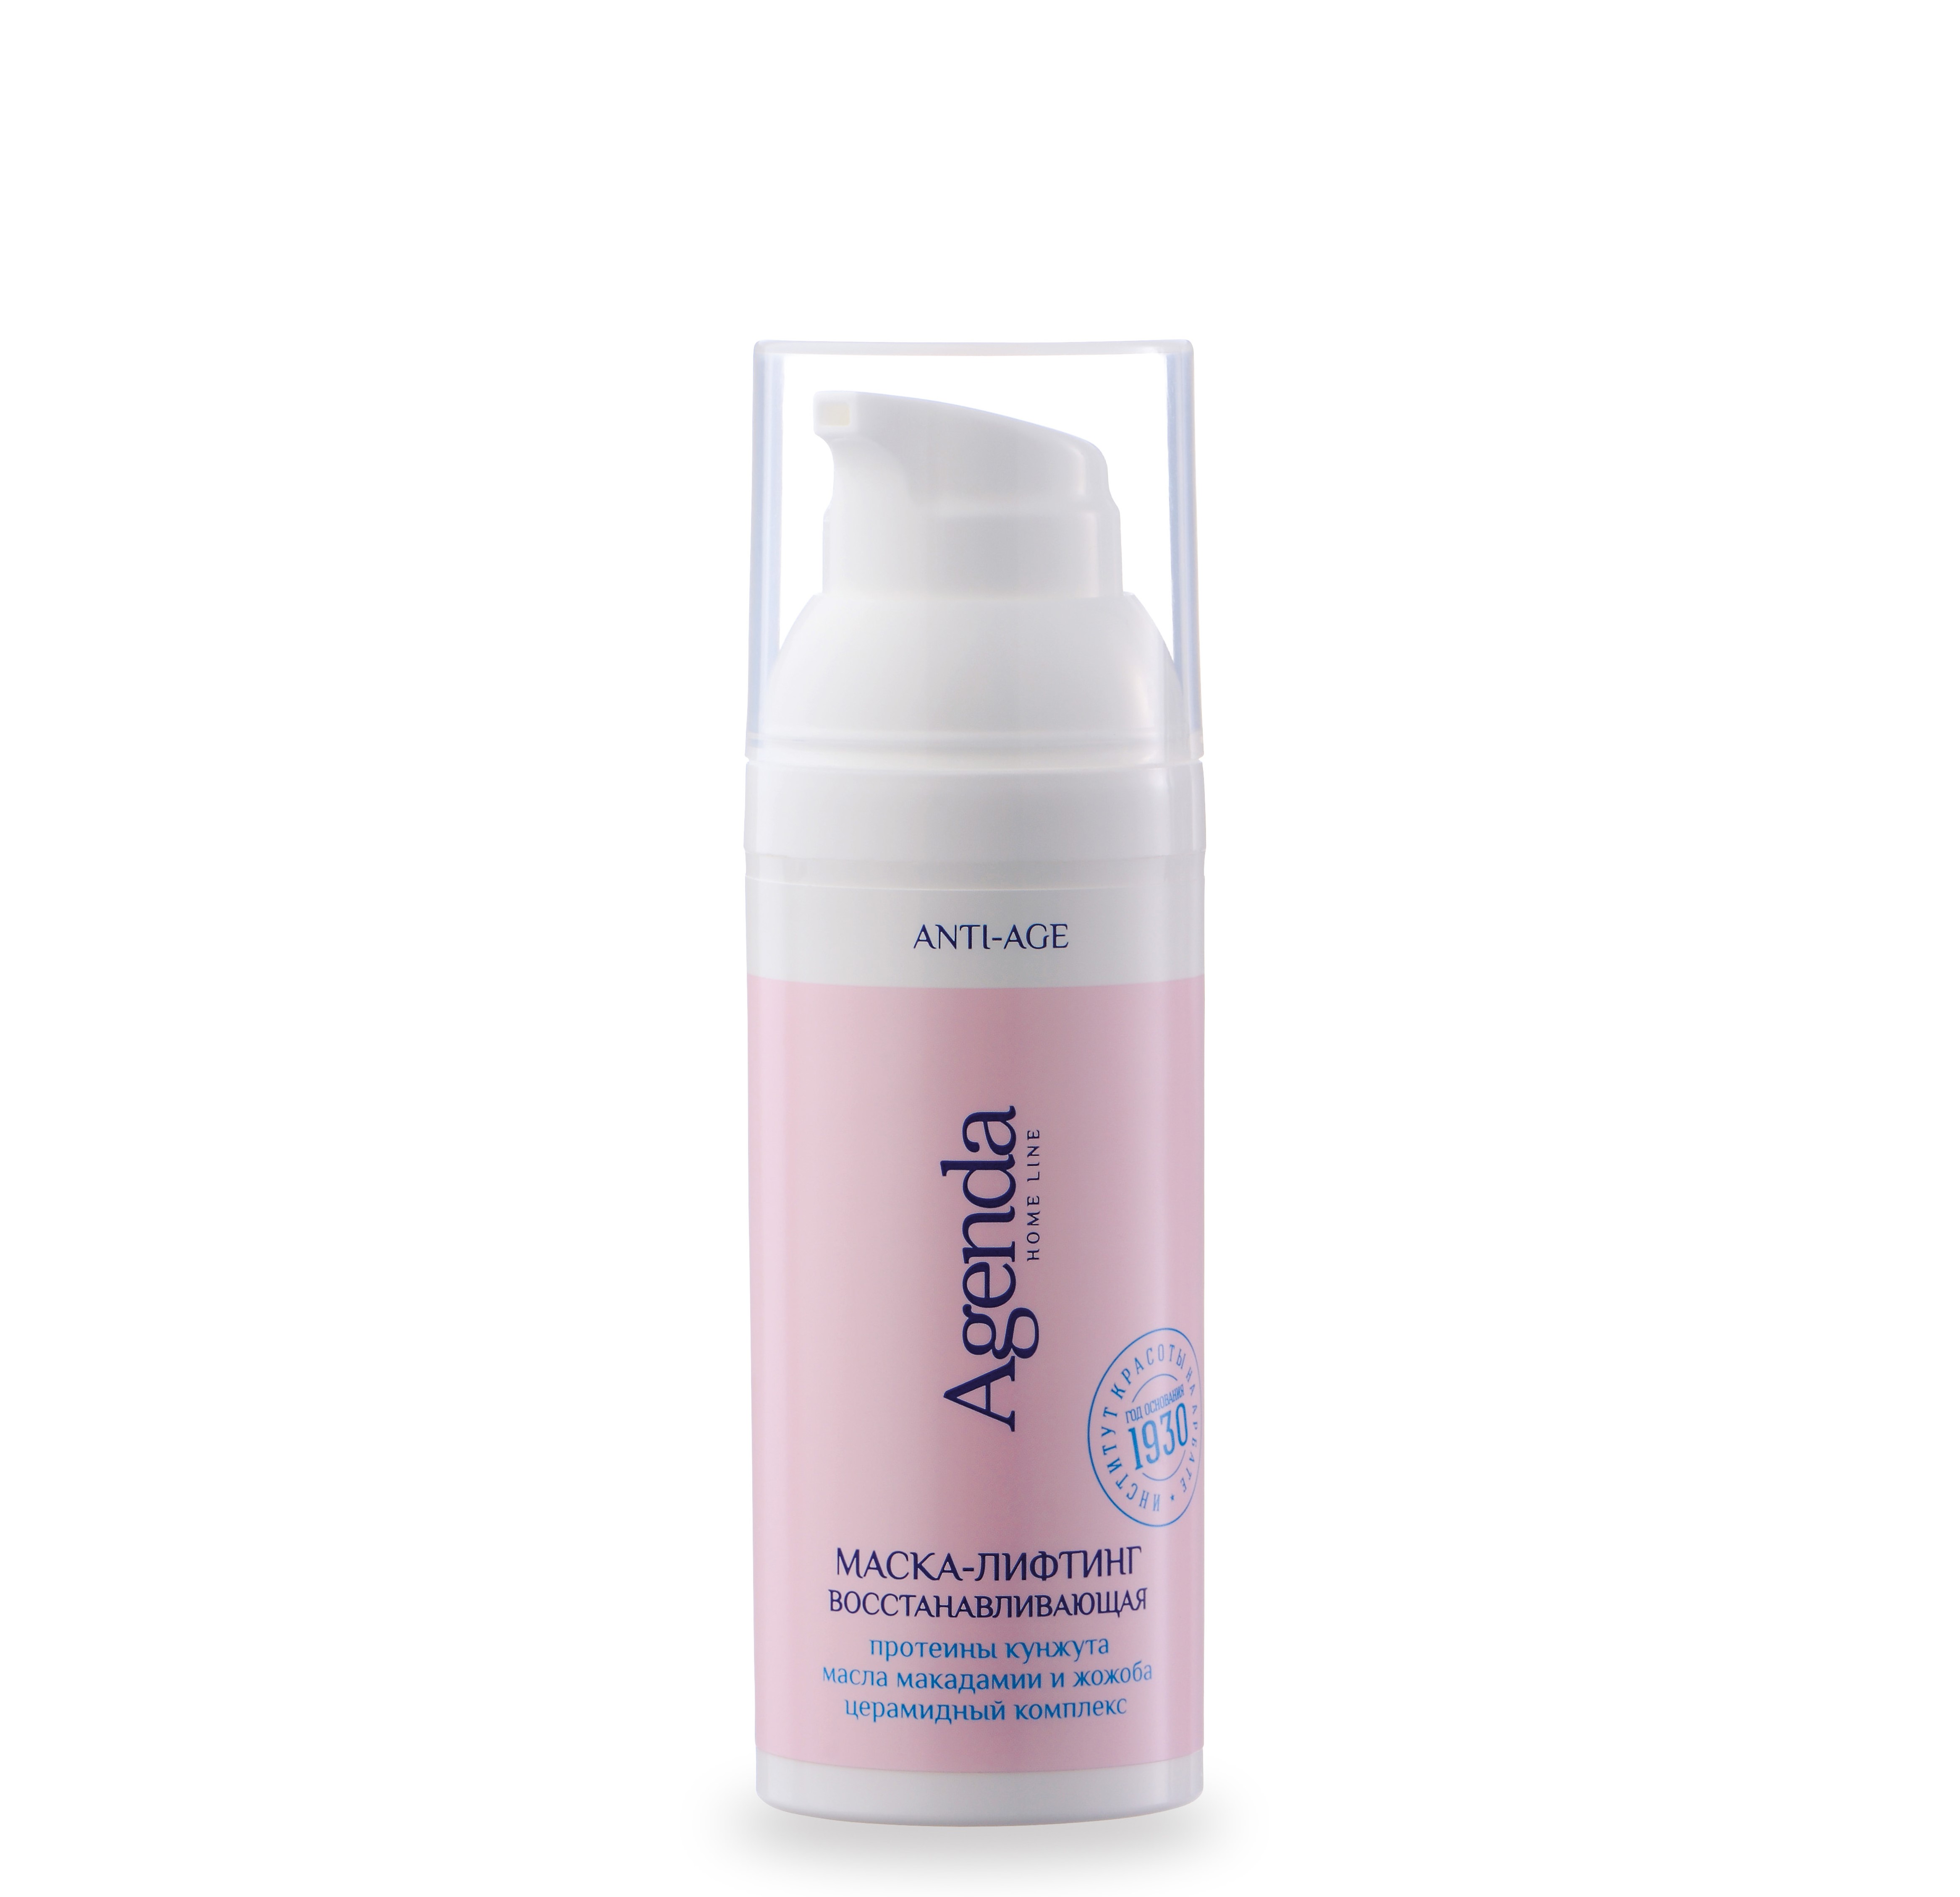 AGENDA ANTI-AGE Маска-лифтинг восстанавливающая для всех типов кожи